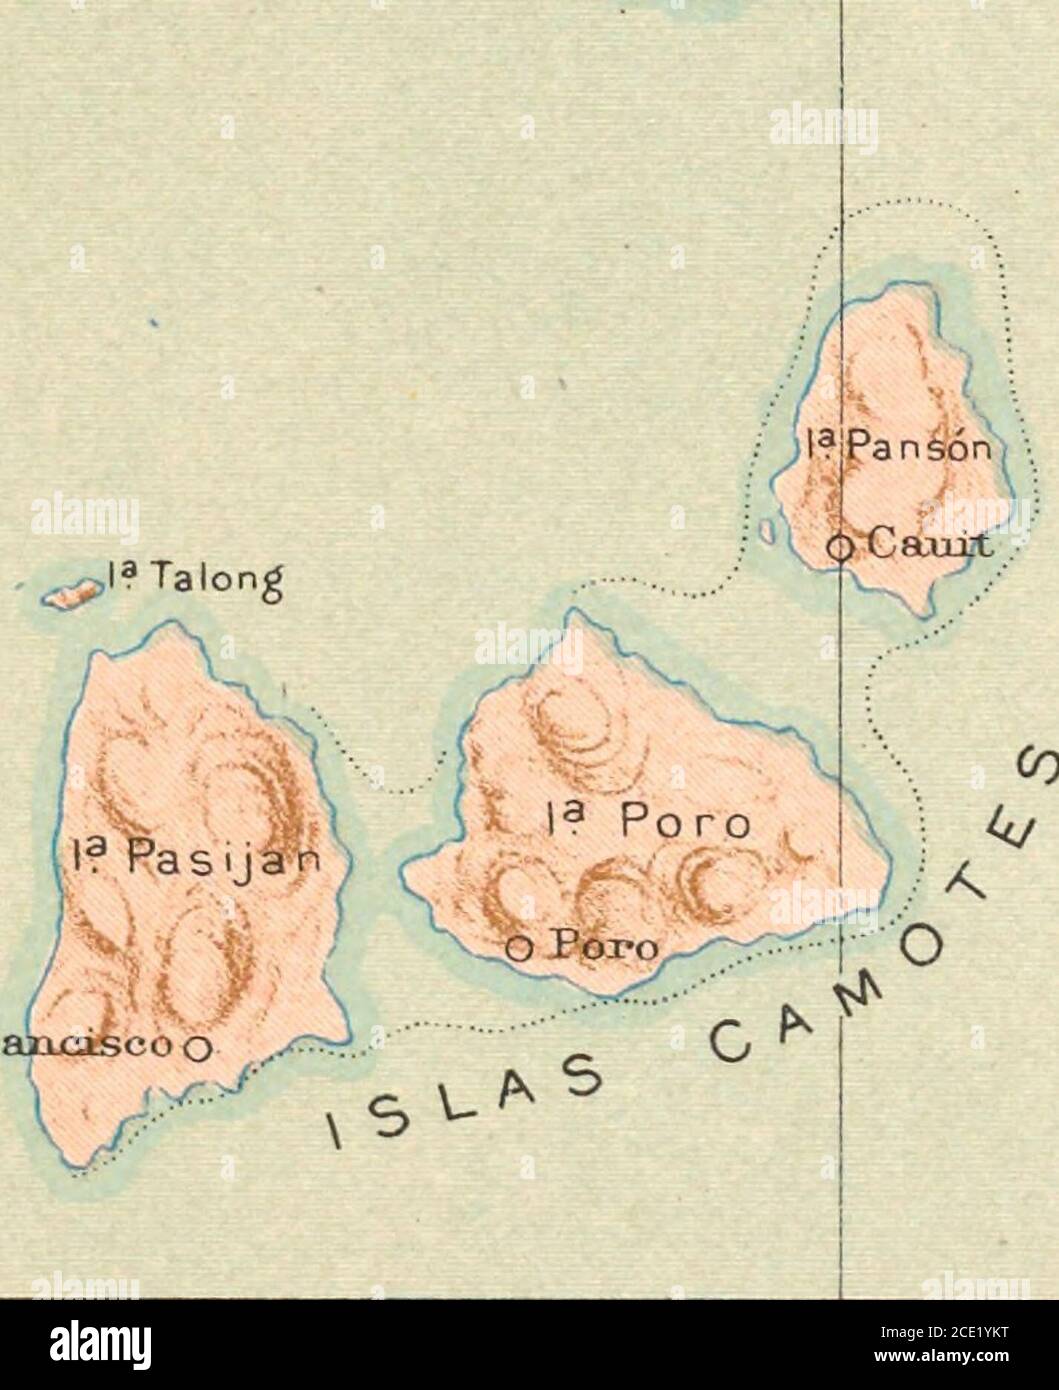 Atlas Of The Philippine Islands M Tut I O Ruura Suidatu Y 7 Oti Pta Baglit Cjararntan M bas Oalhiier A F Aglitagan I Gt Il Marabao Y M Palanas M Guindal M Tiias3 Ya S Auffiistirt